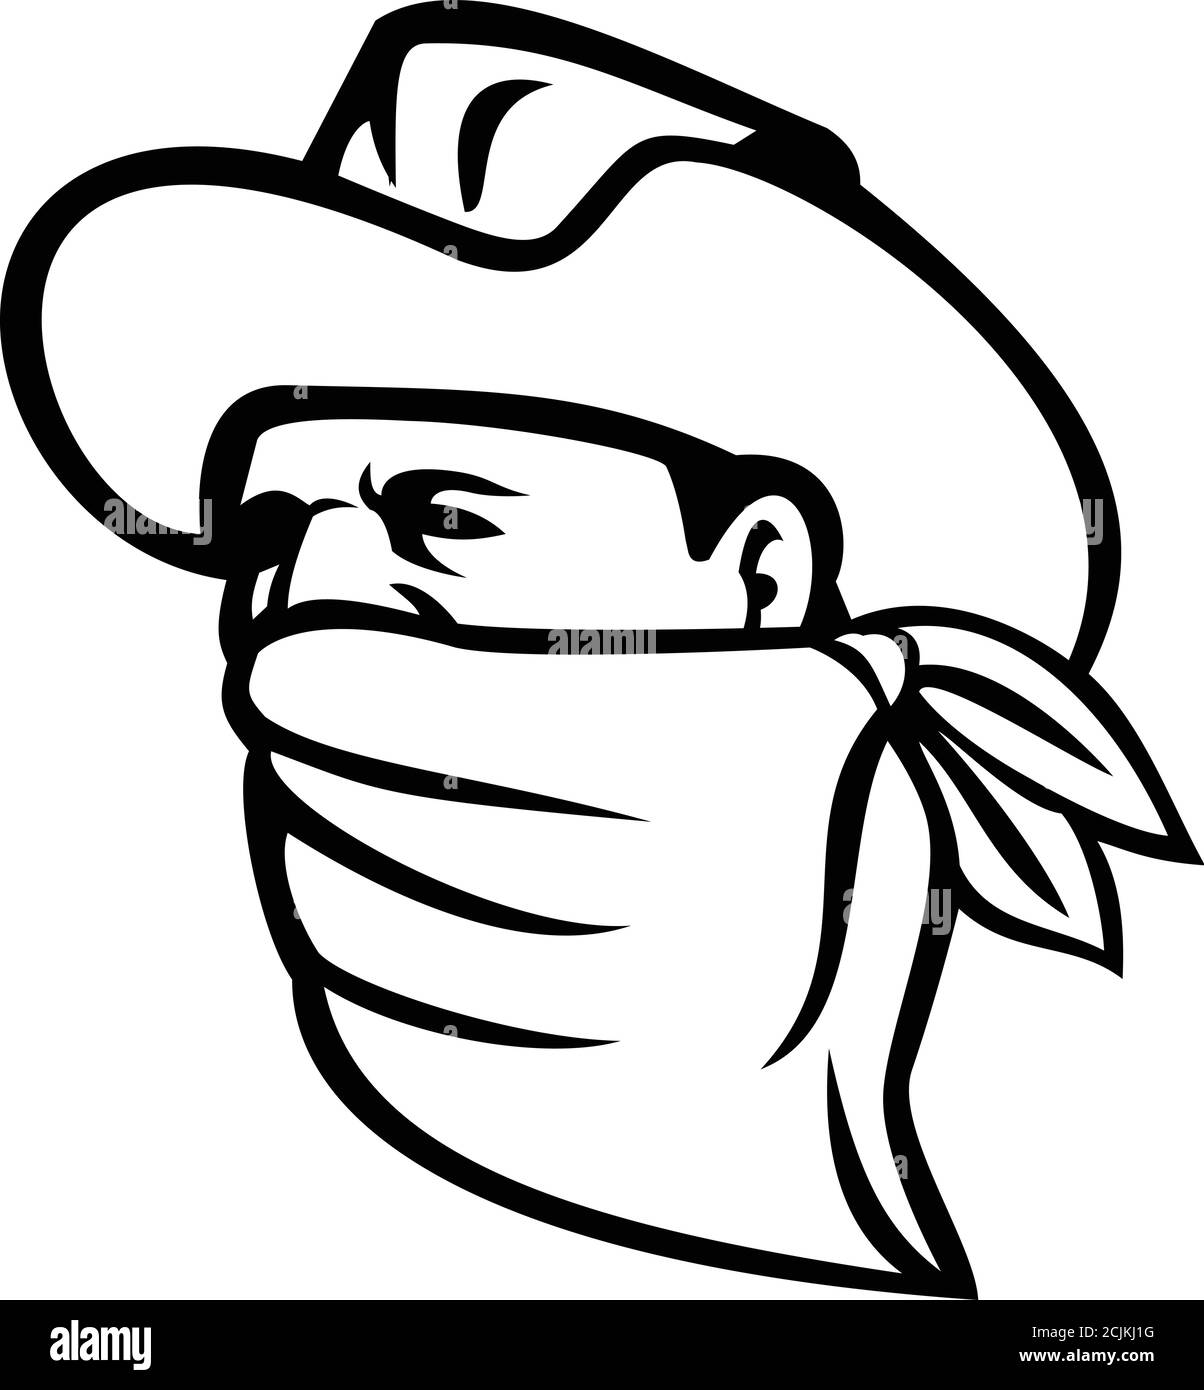 Mascotte illustration d'un cowboy bandit, Outlaw, highwayman, Maverick ou voleur portant un masque facial, une couverture faciale ou un bandana regardant à côté sur l'isolate Illustration de Vecteur